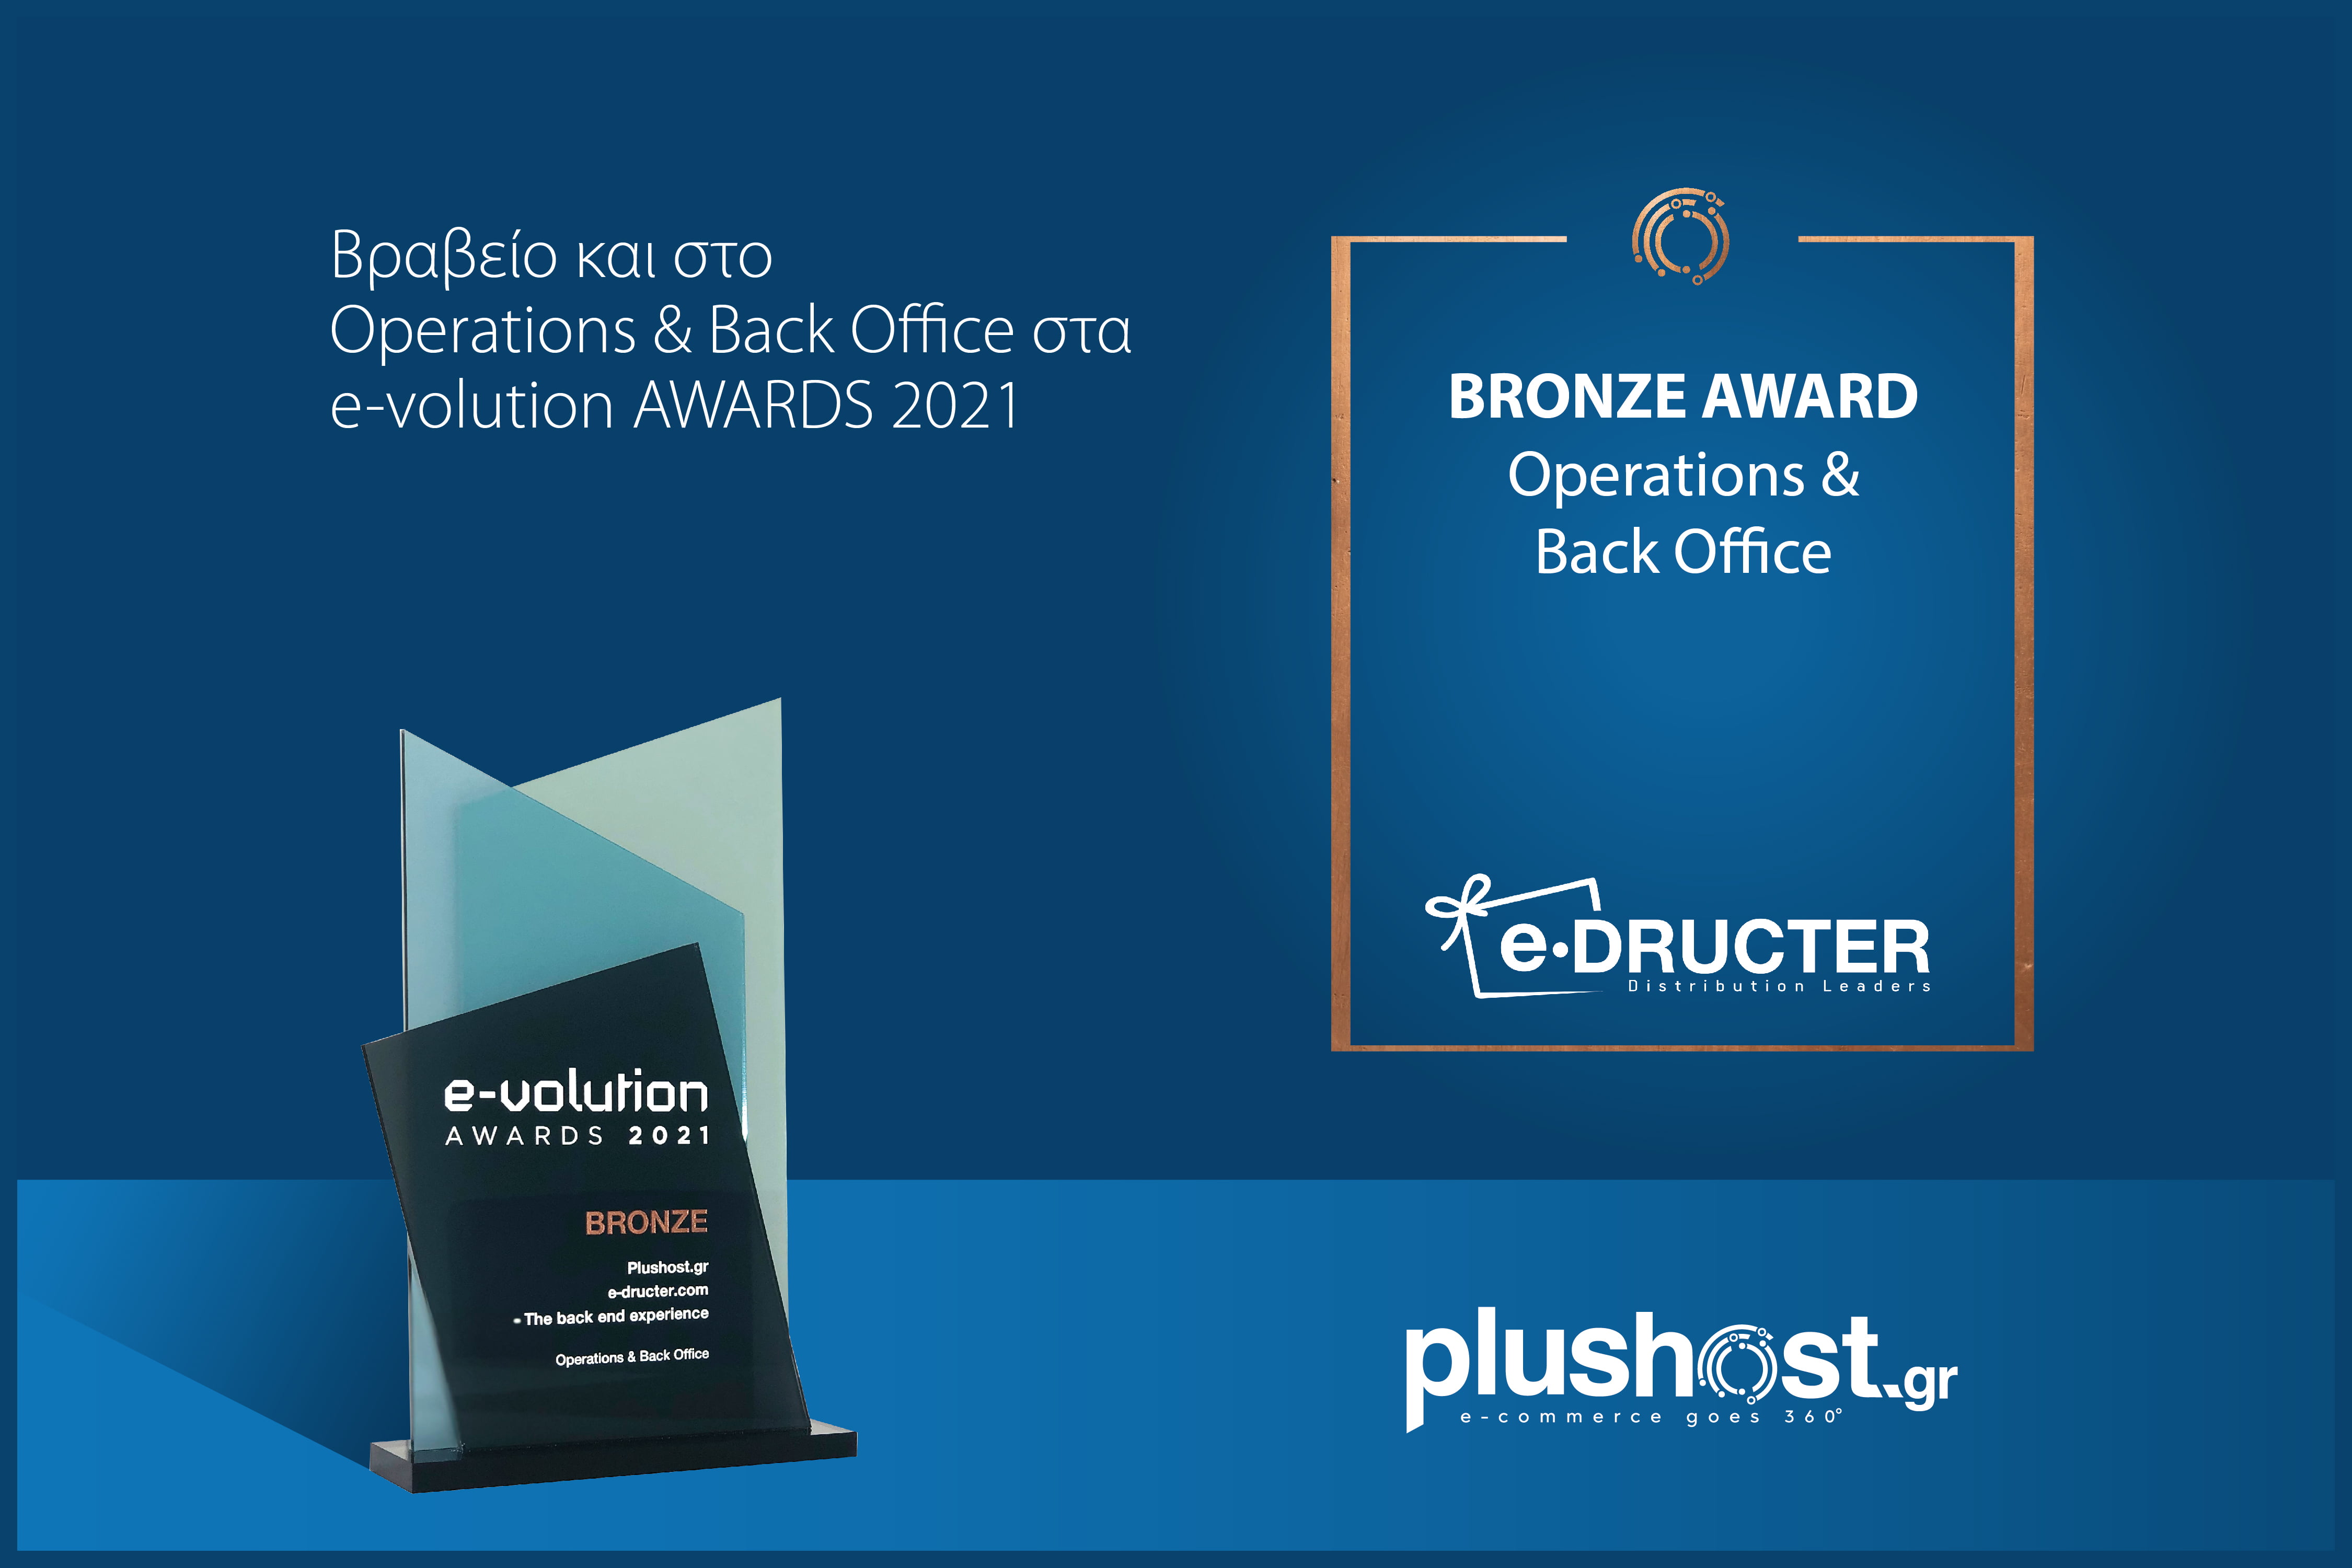 Βραβευτήκαμε και στην κατηγορία Operations & Back Office στα e-volution AWARDS 2021